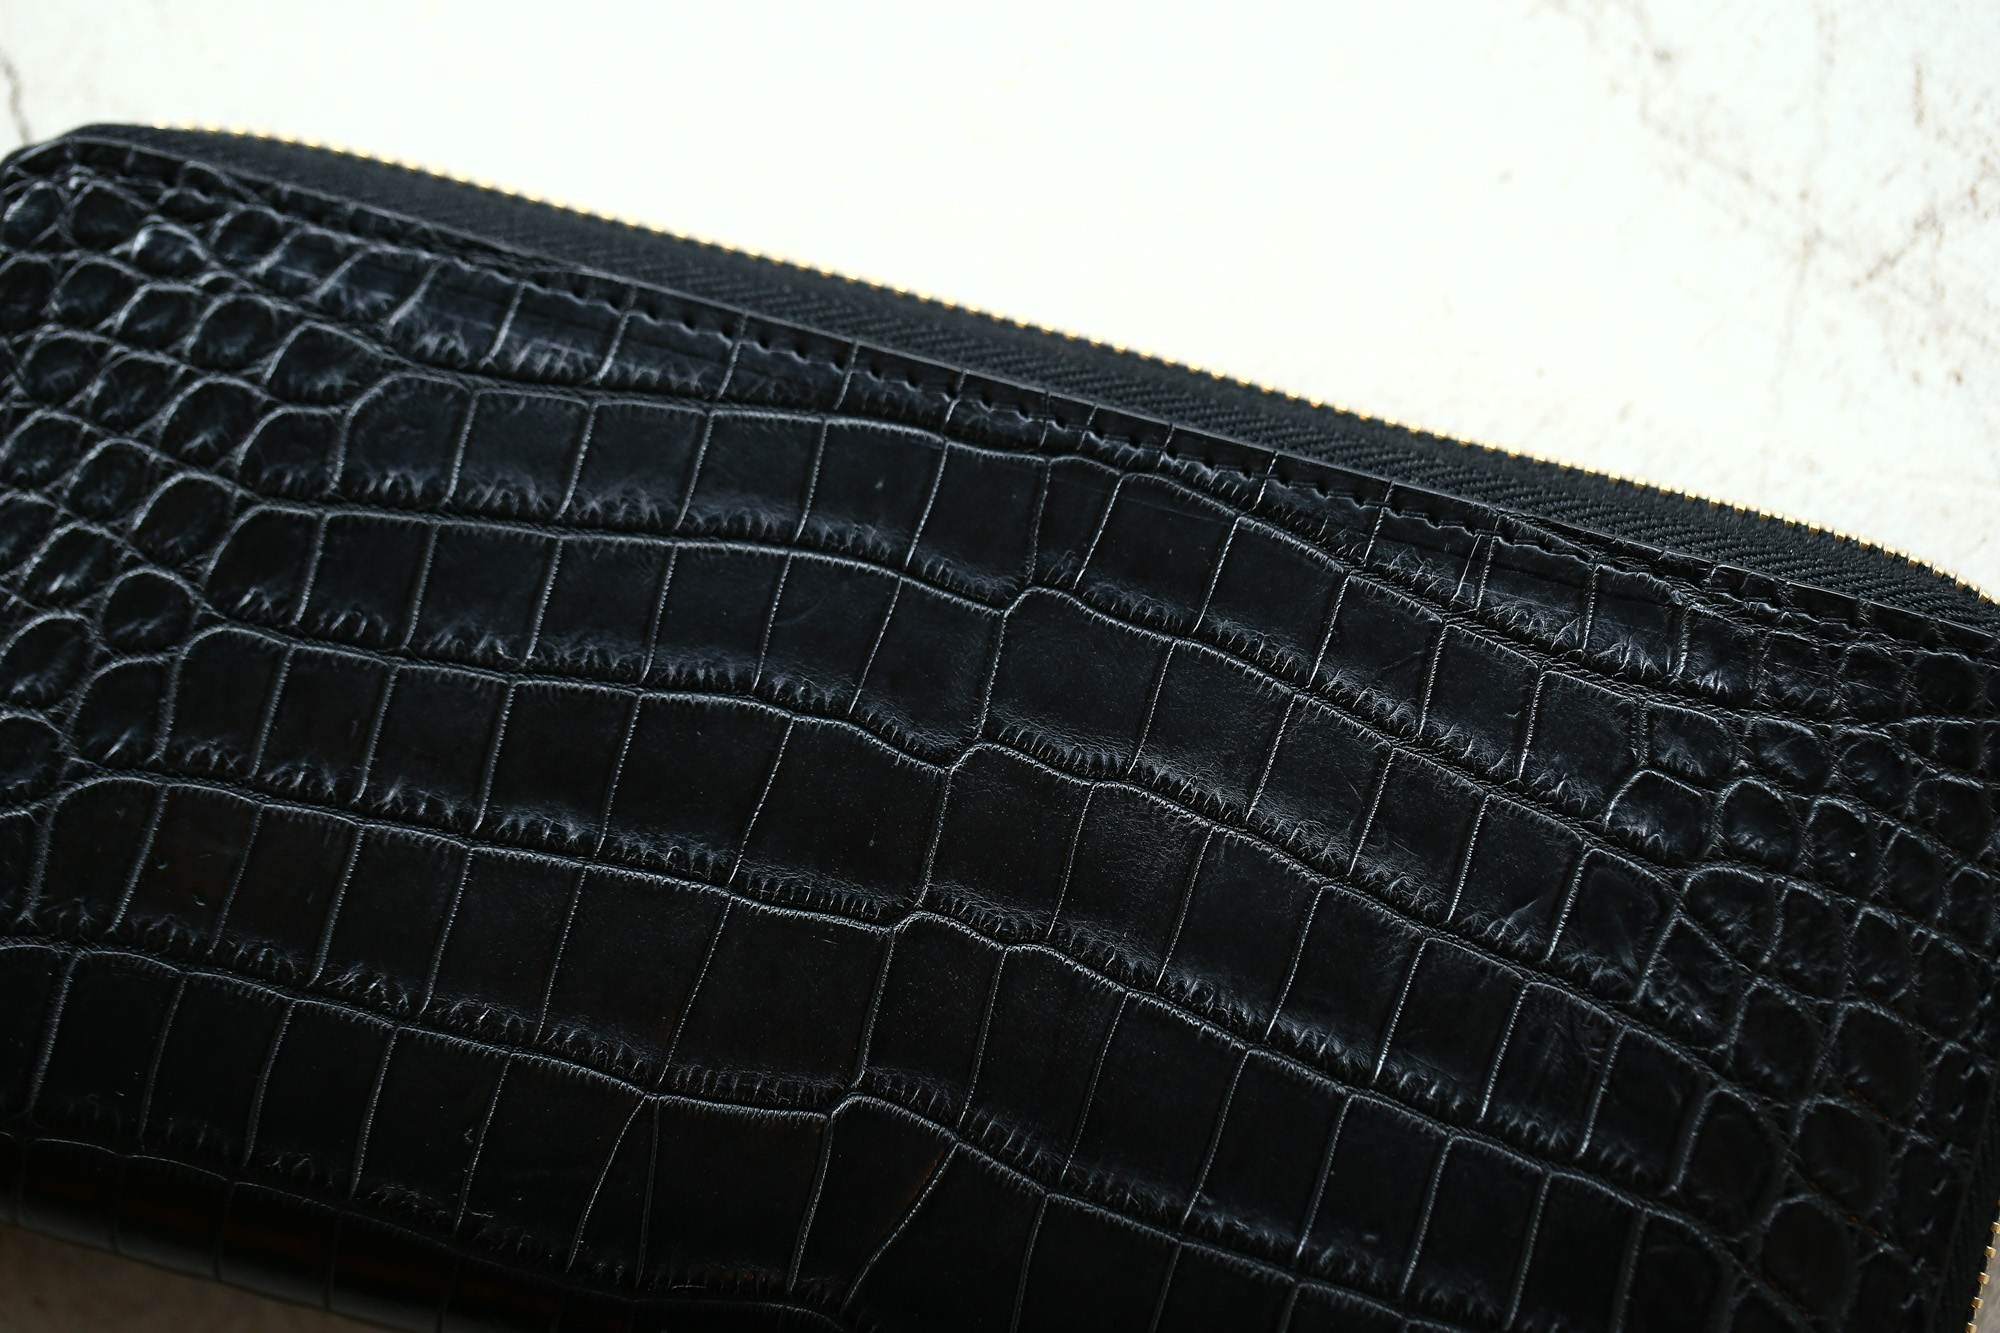 Cisei × 山本製鞄 (シセイ × 山本製鞄) Crocodile Long Wallet (クロコダイル ロング ウォレット) Nile Crocodile Leather (ワニ革) ナイル クロコダイル ウォレット 長財布 BLACK(ブラック),NAVY(ネイビー),BROWN(ブラウン) Made in Japan (日本製)  cisei yamamotoseiho トートバック クロコ 愛知 名古屋 Alto e Diritto アルト エ デリット